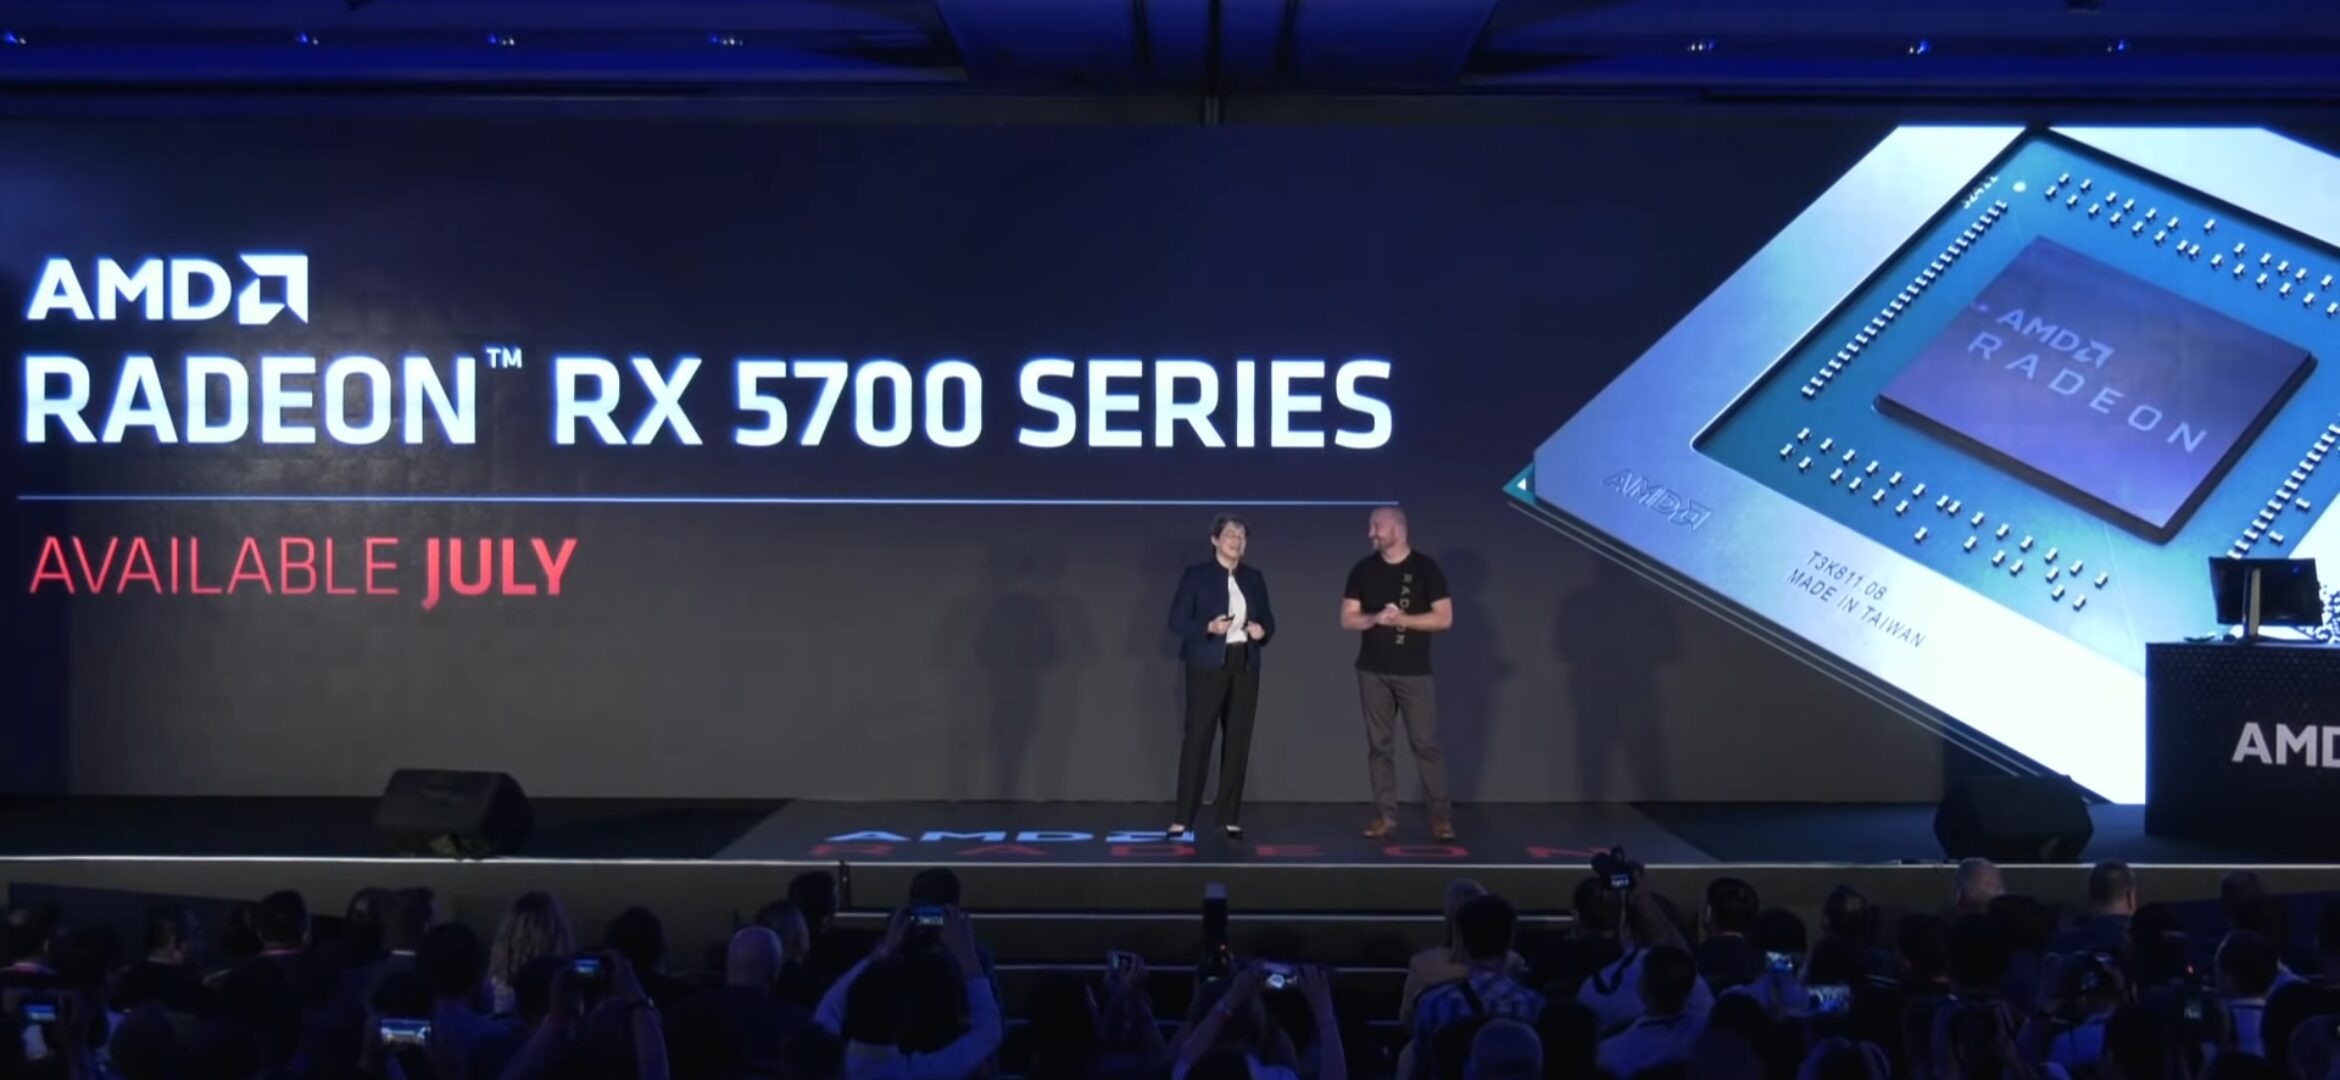 AMD Radeon RX 5700 shown at Computex 2019, 10% faster than NVIDIA RTX 2070